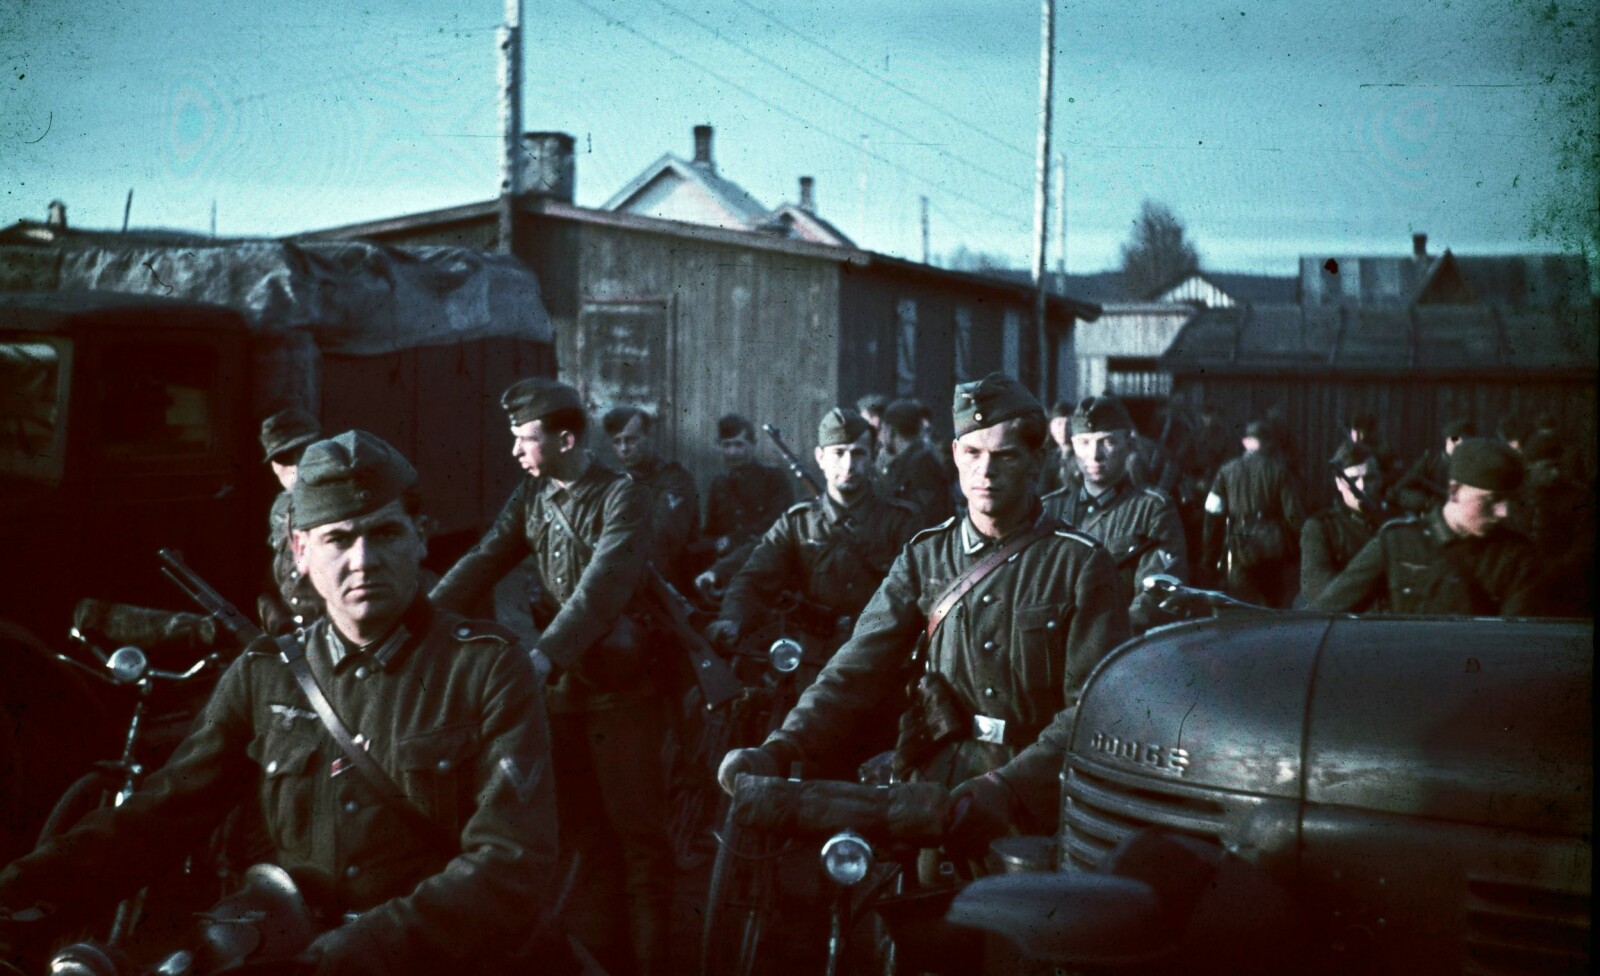 <b>SPEED-KRIEG:</b> Tyske soldater ble satt opp med amfetamin-preparatet Pervitin da de rykket inn i Norge. Effekten spredde frykt blant nordmenn som ble utsatt for de rusede soldatene. 